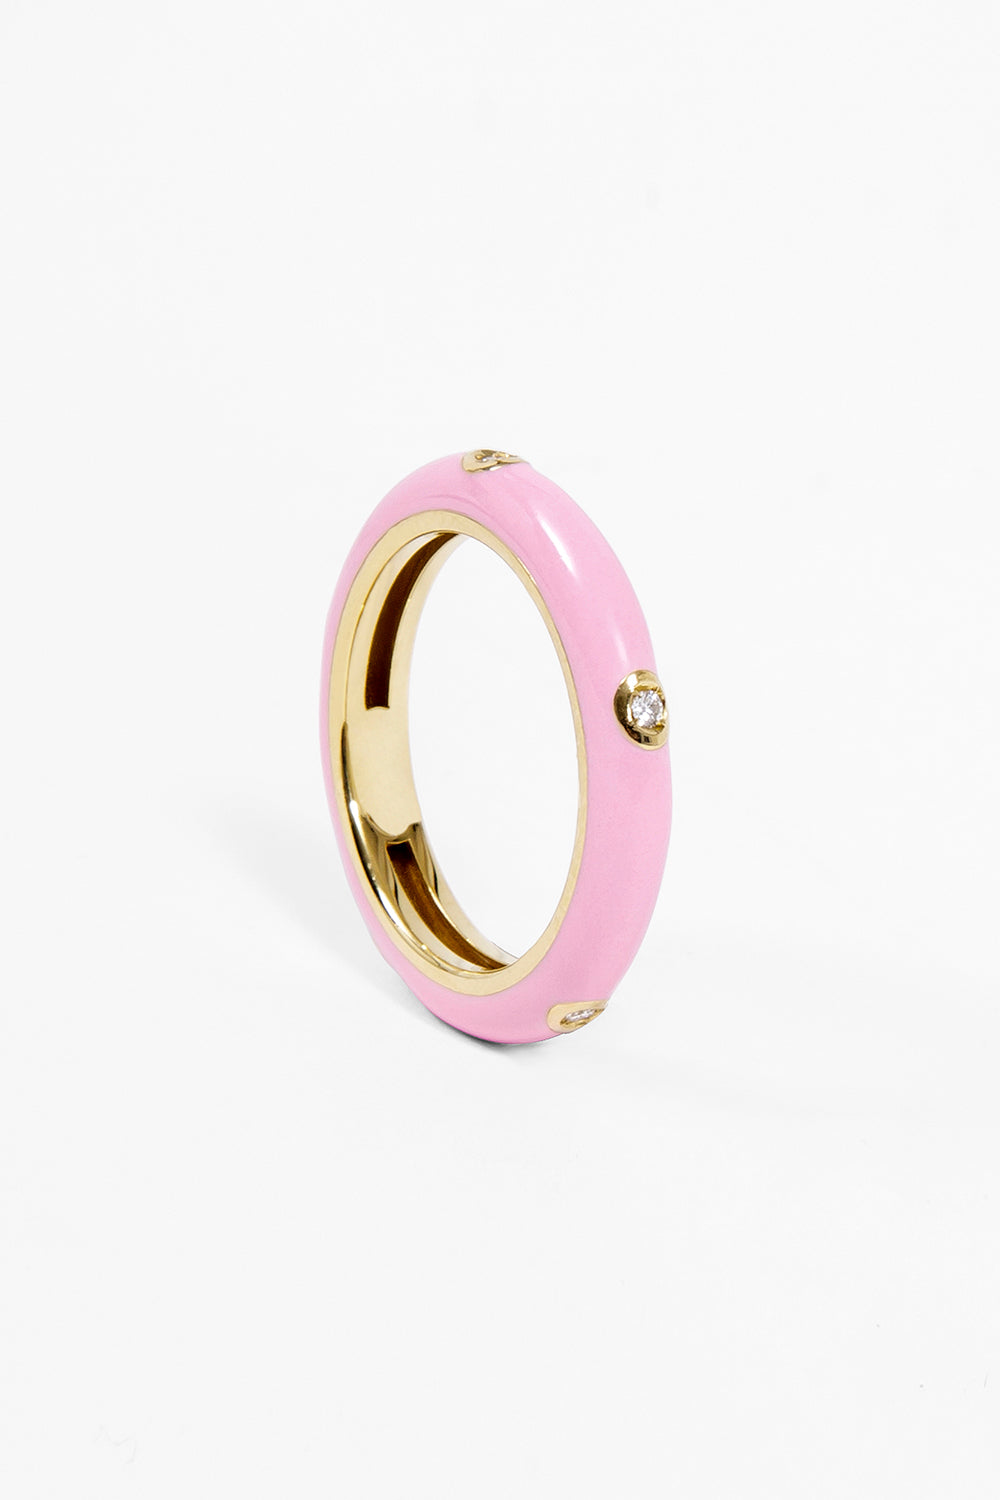 Enameled ring pink